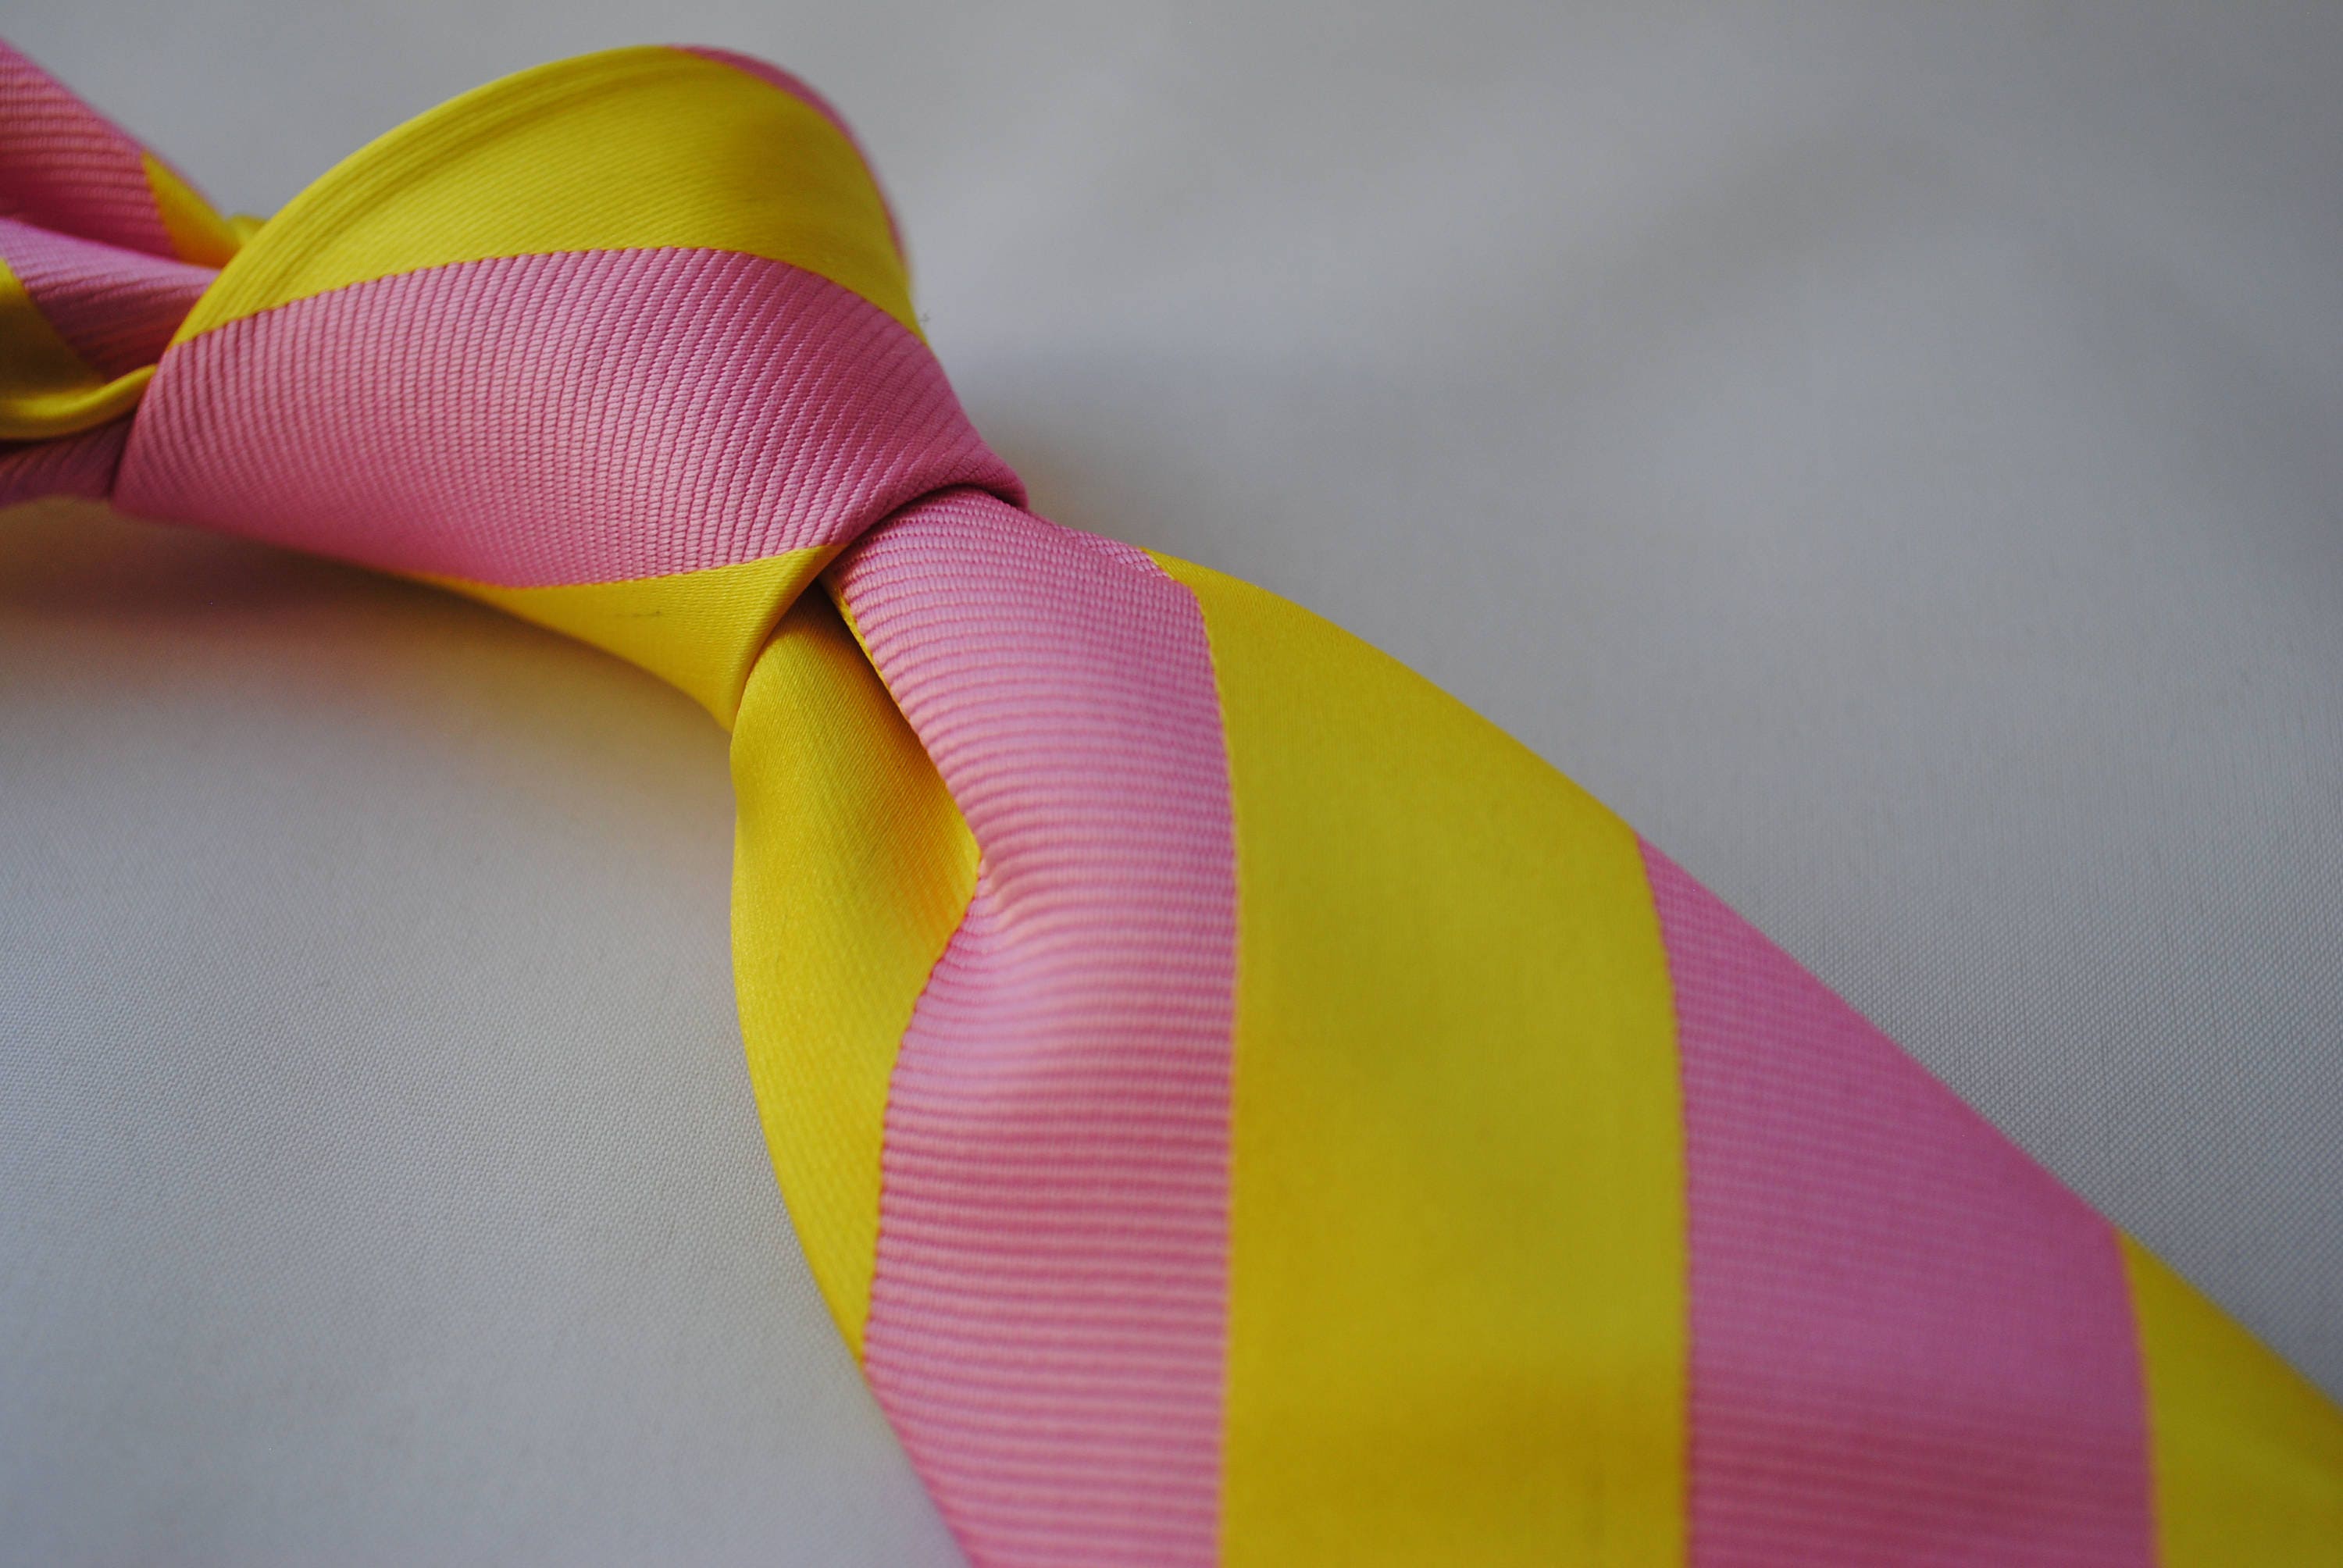 TieMart Pink Ribbon Bow Tie